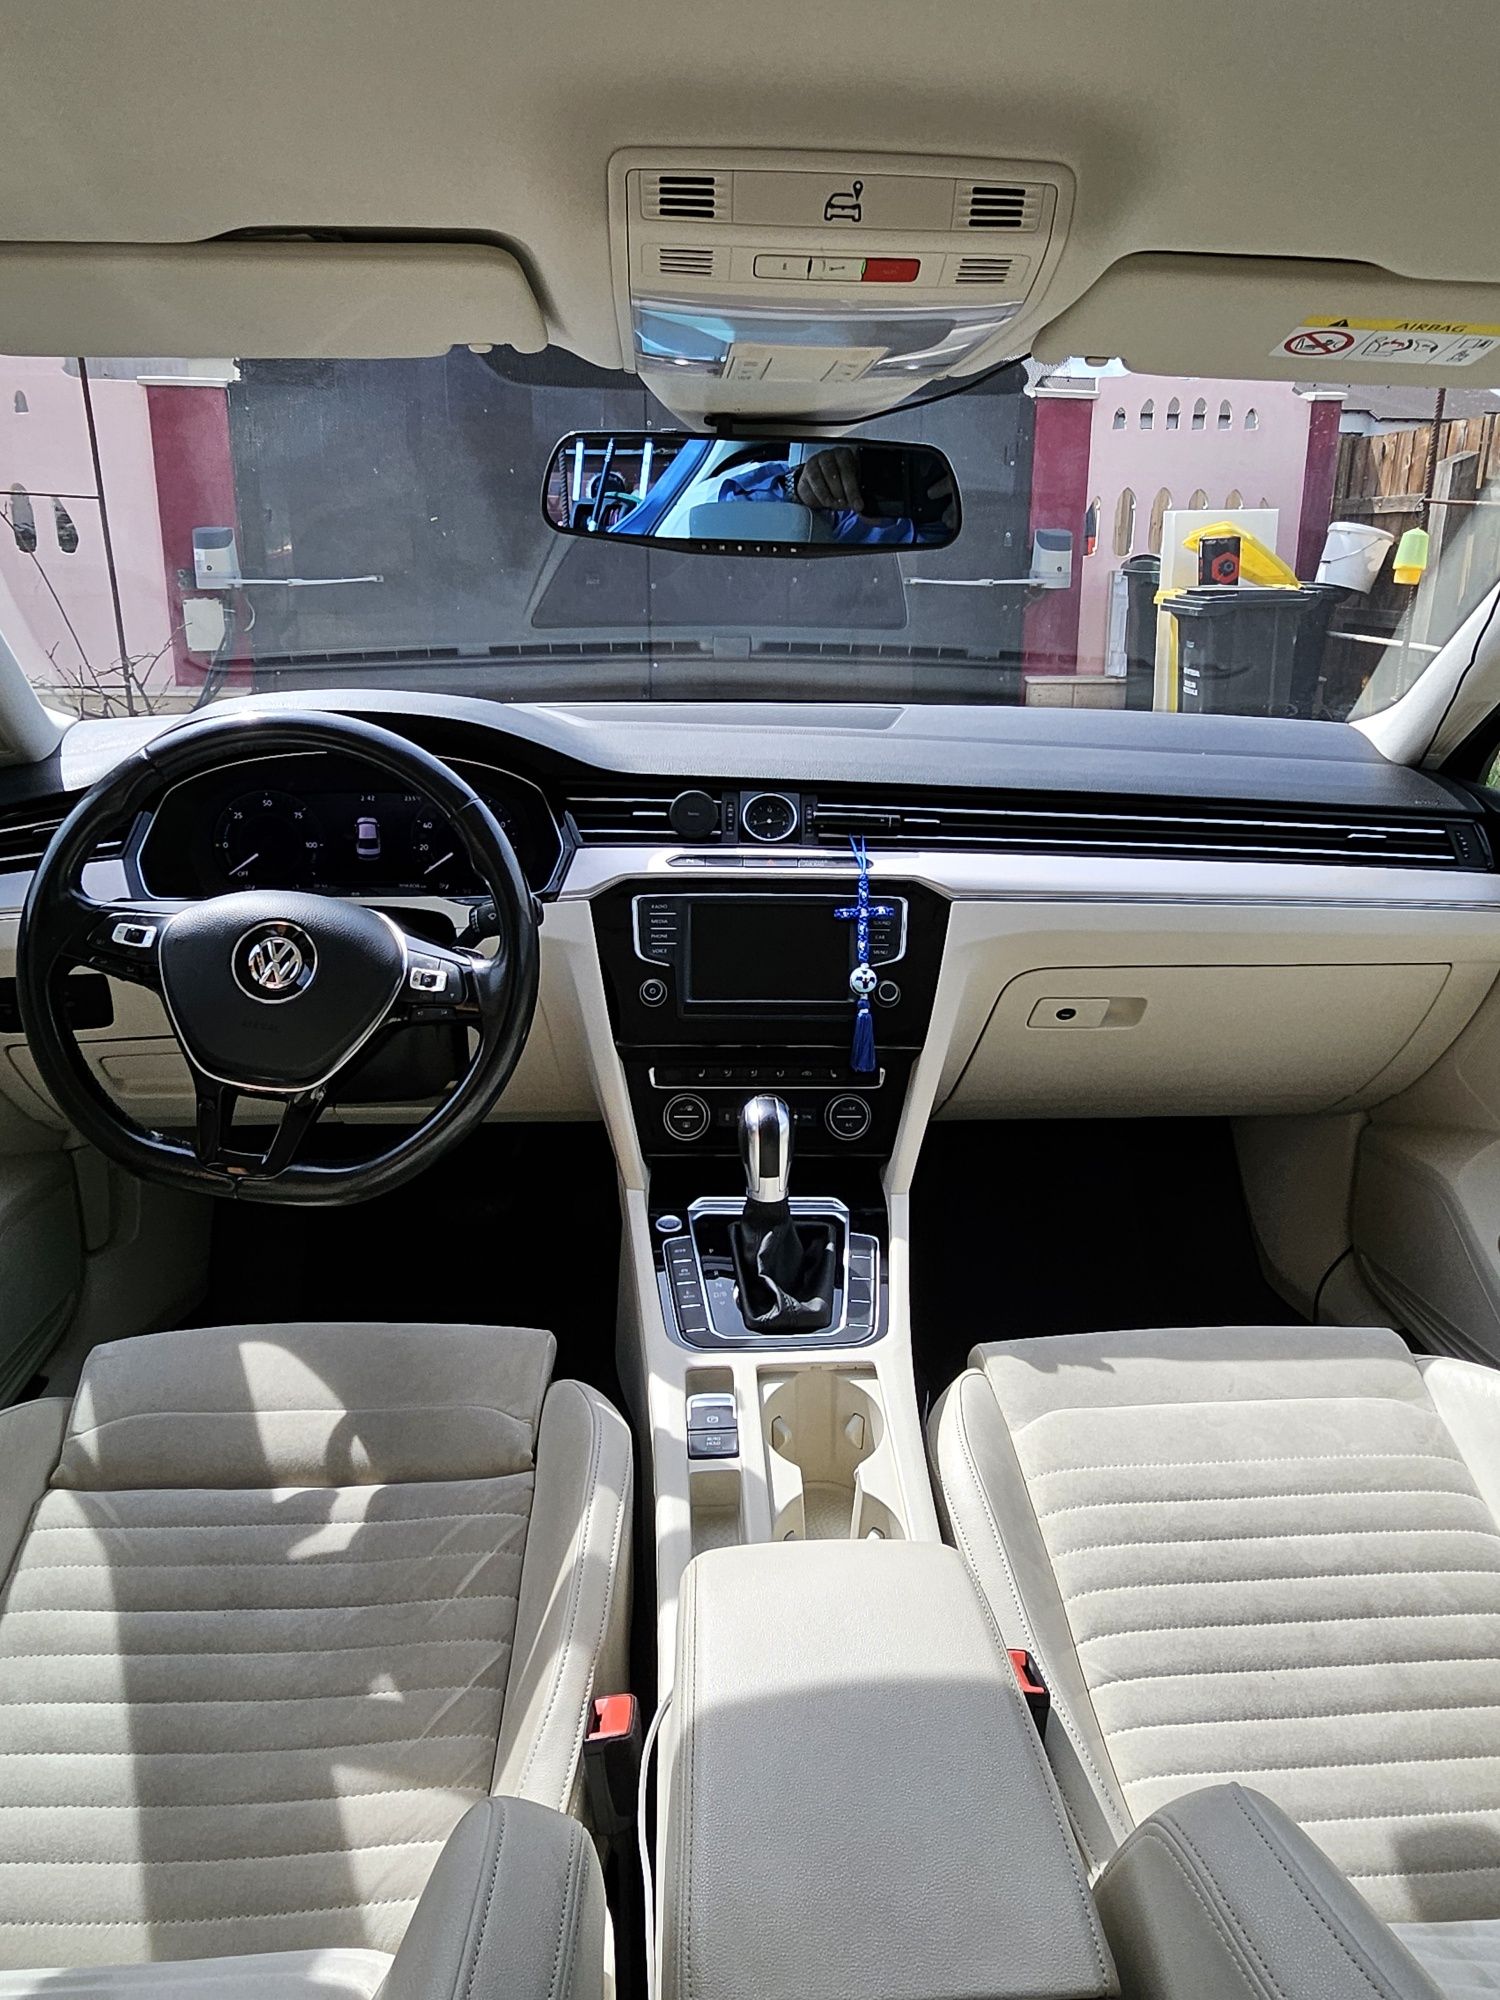 Volkswagen Passat GTE, hybrid plug-in